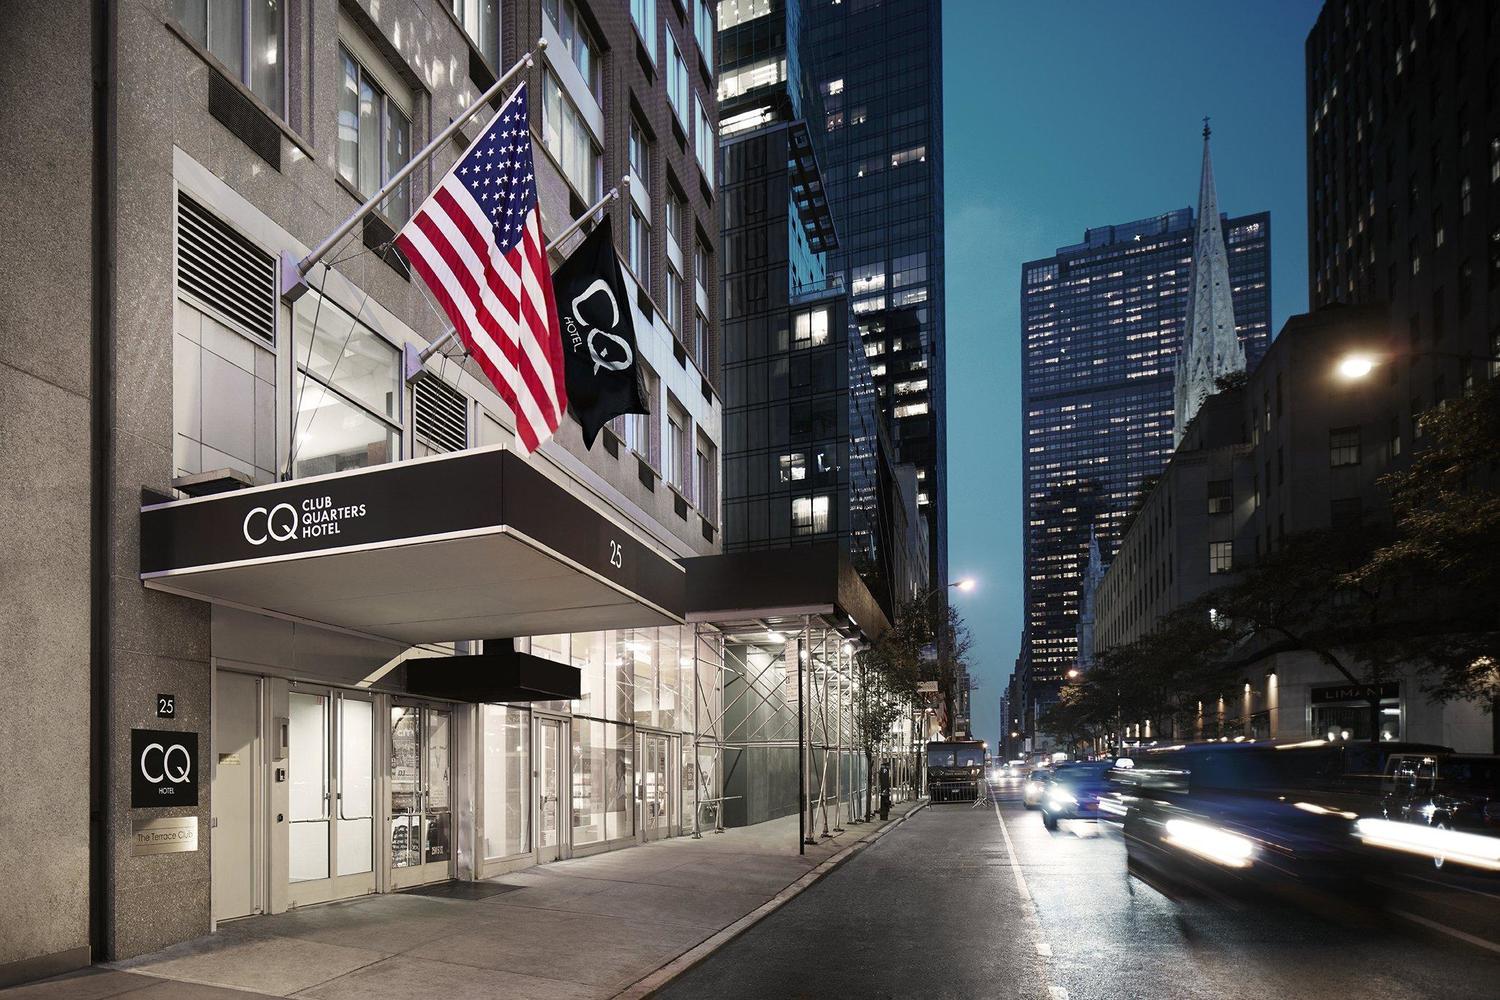 Club Quarters Hotel, opposite Rockefeller Center, New York, NY Jobs |  Hospitality Online